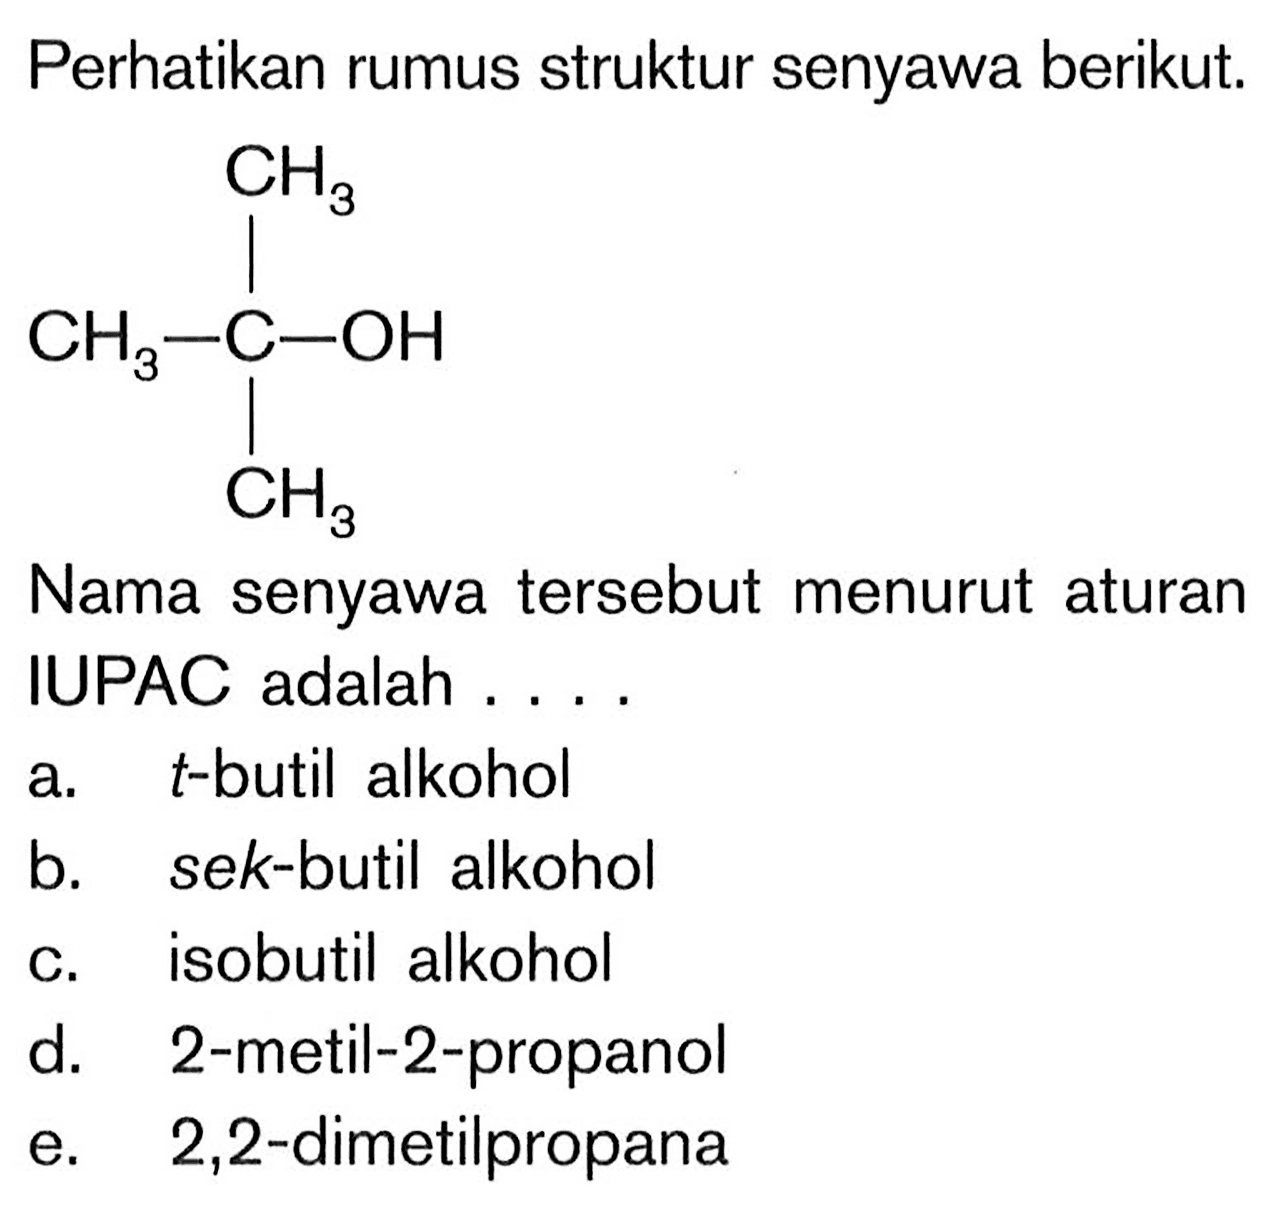 Perhatikan rumus struktur senyawa berikut.CH3|CH3-C-OH |CH3Nama senyawa tersebut menurut aturanIUPAC adalah ....a. t -butil alkoholb. sek-butil alkoholc. isobutil alkohold. 2-metil-2-propanole. 2,2 -dimetilpropana